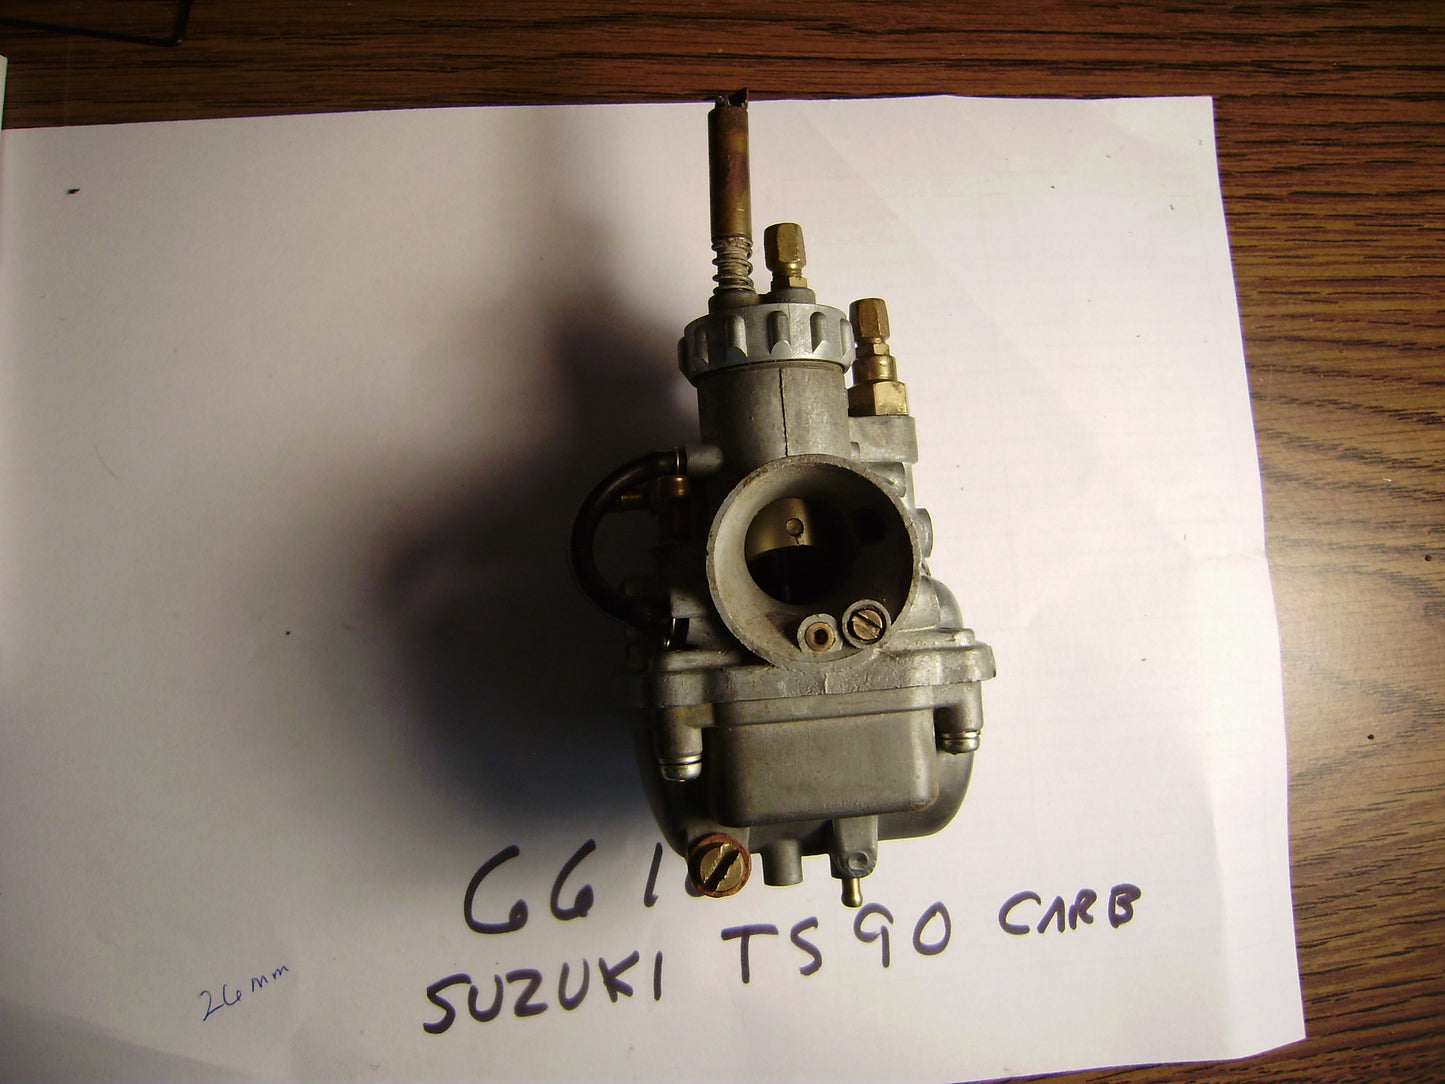 Suzuki TS90 OEM Carburetor sku 6610